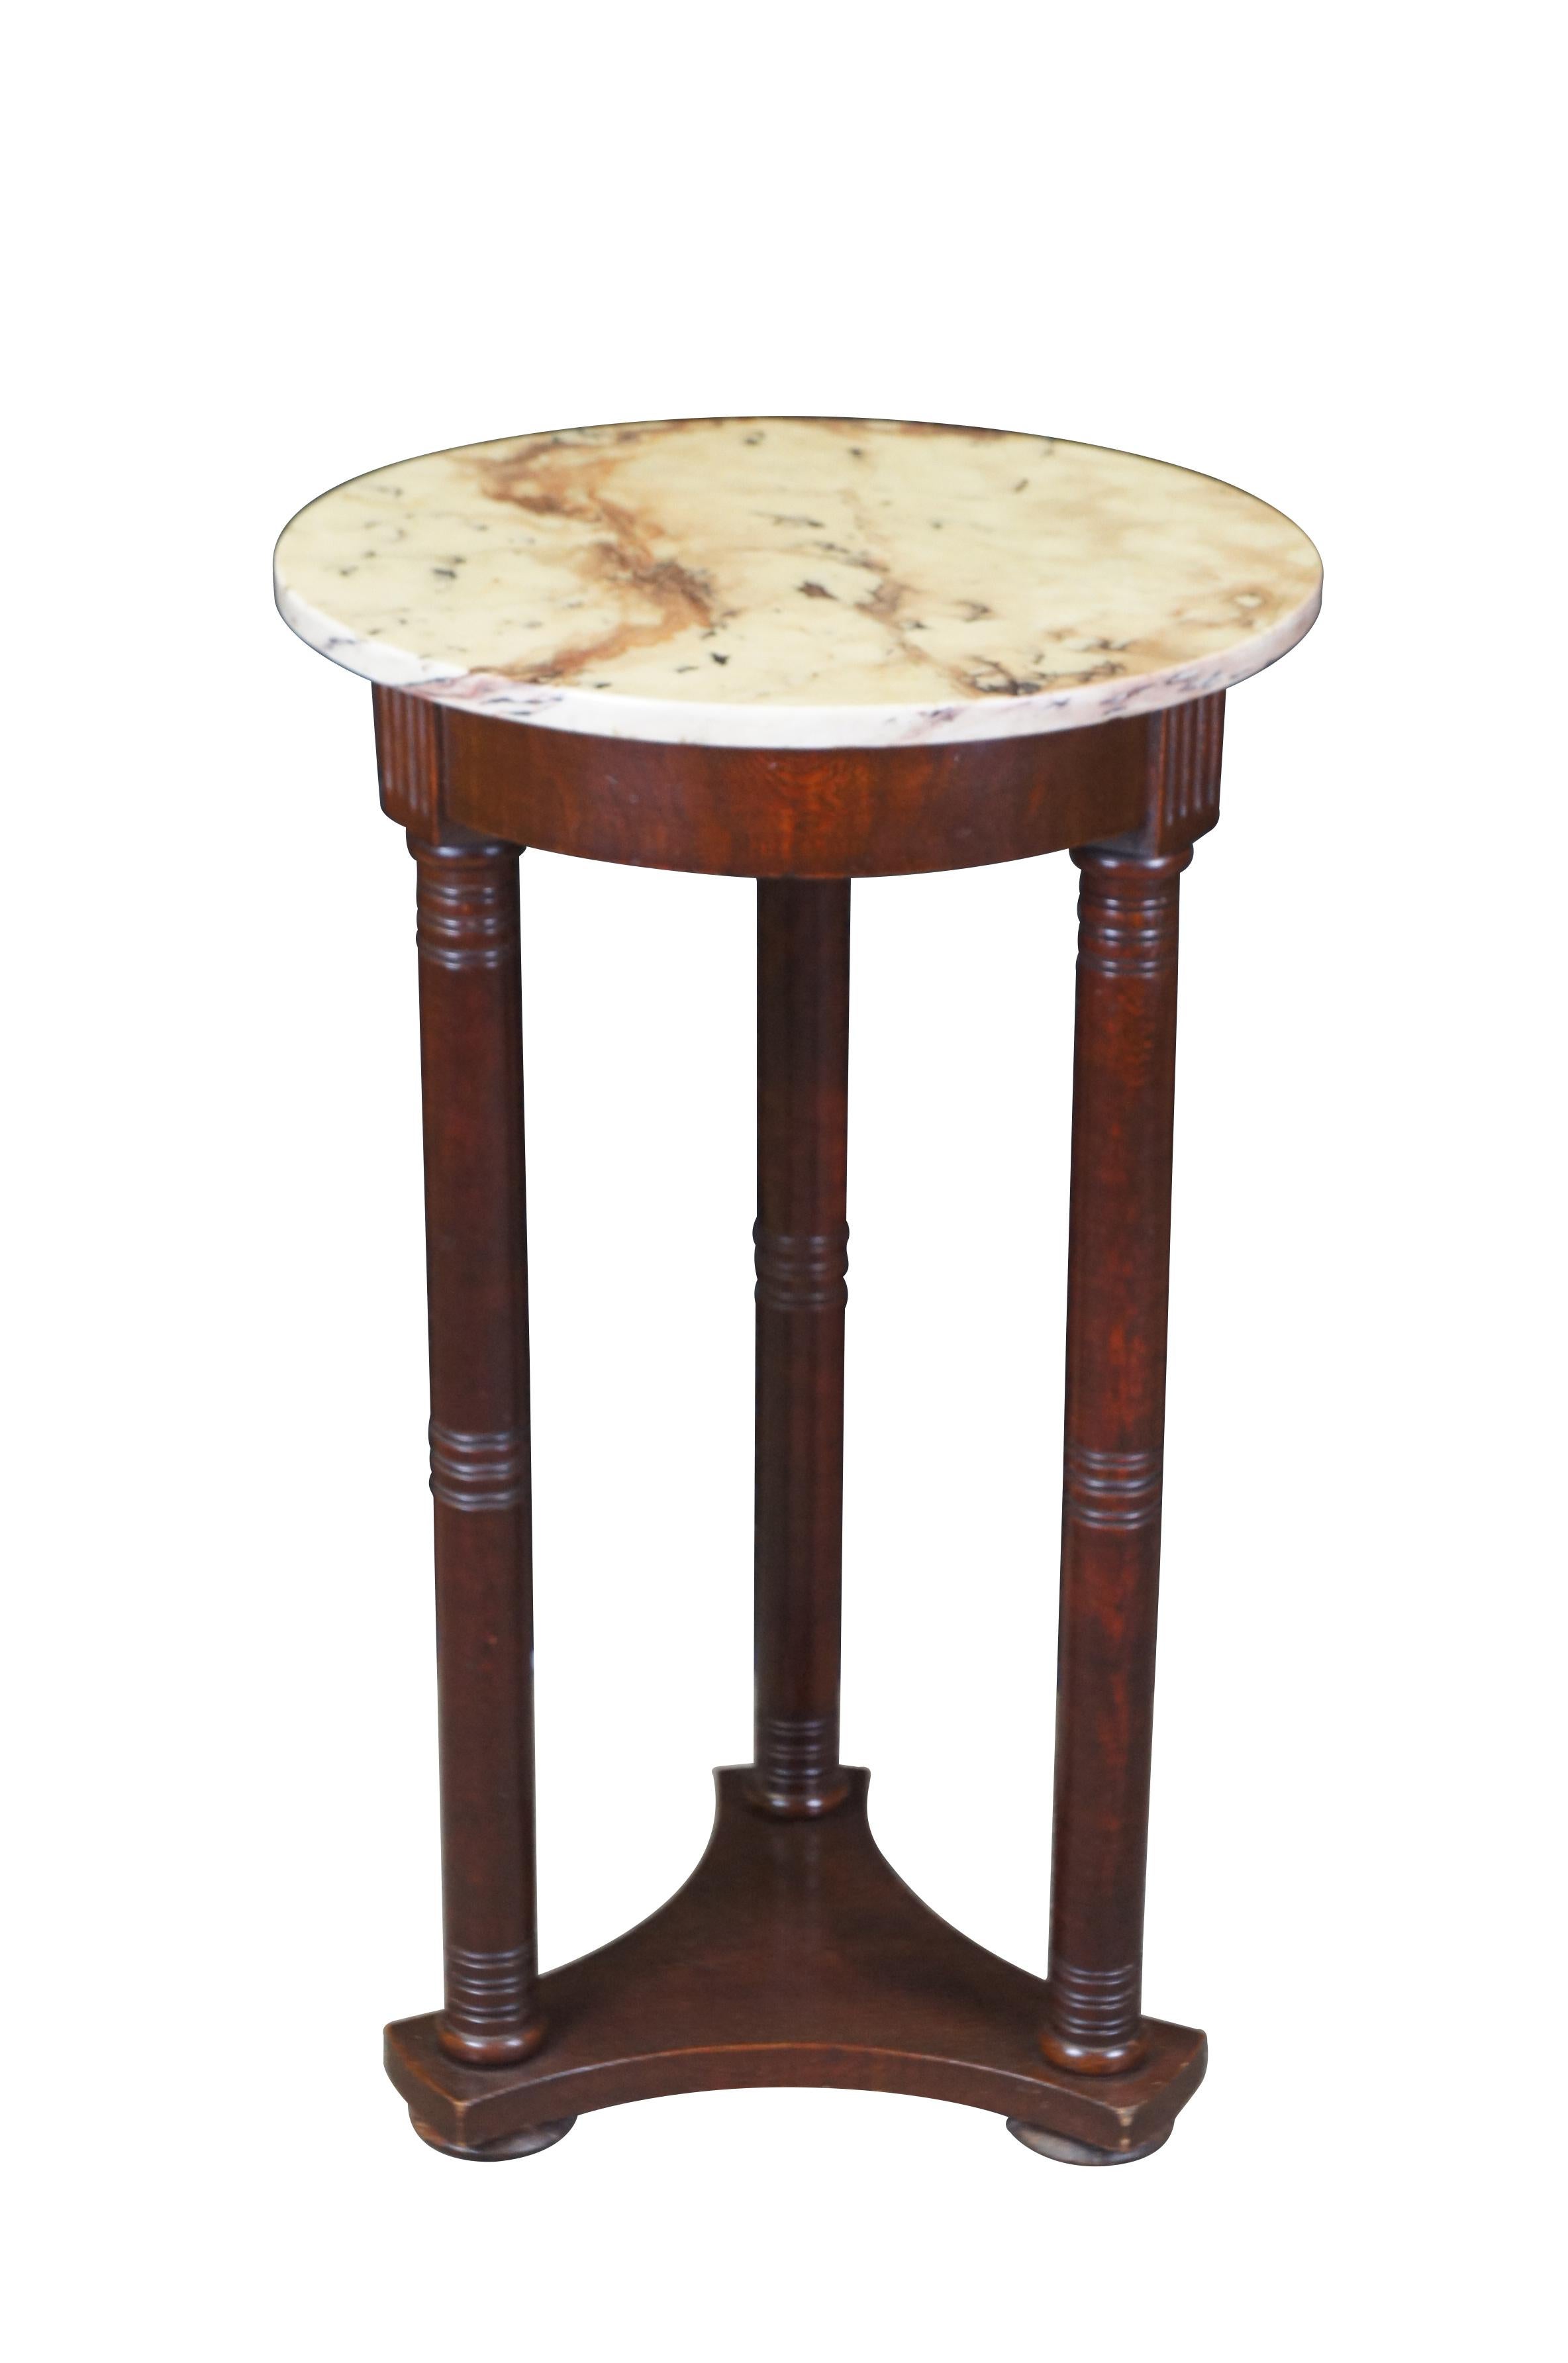 Vintage English Regency / George III Stil Sockeltisch.  Aus Mahagoniholz mit dreieckigem Sockel, der gedrechselte Säulen trägt, und runder Marmorplatte.

Abmessungen:
17,75 